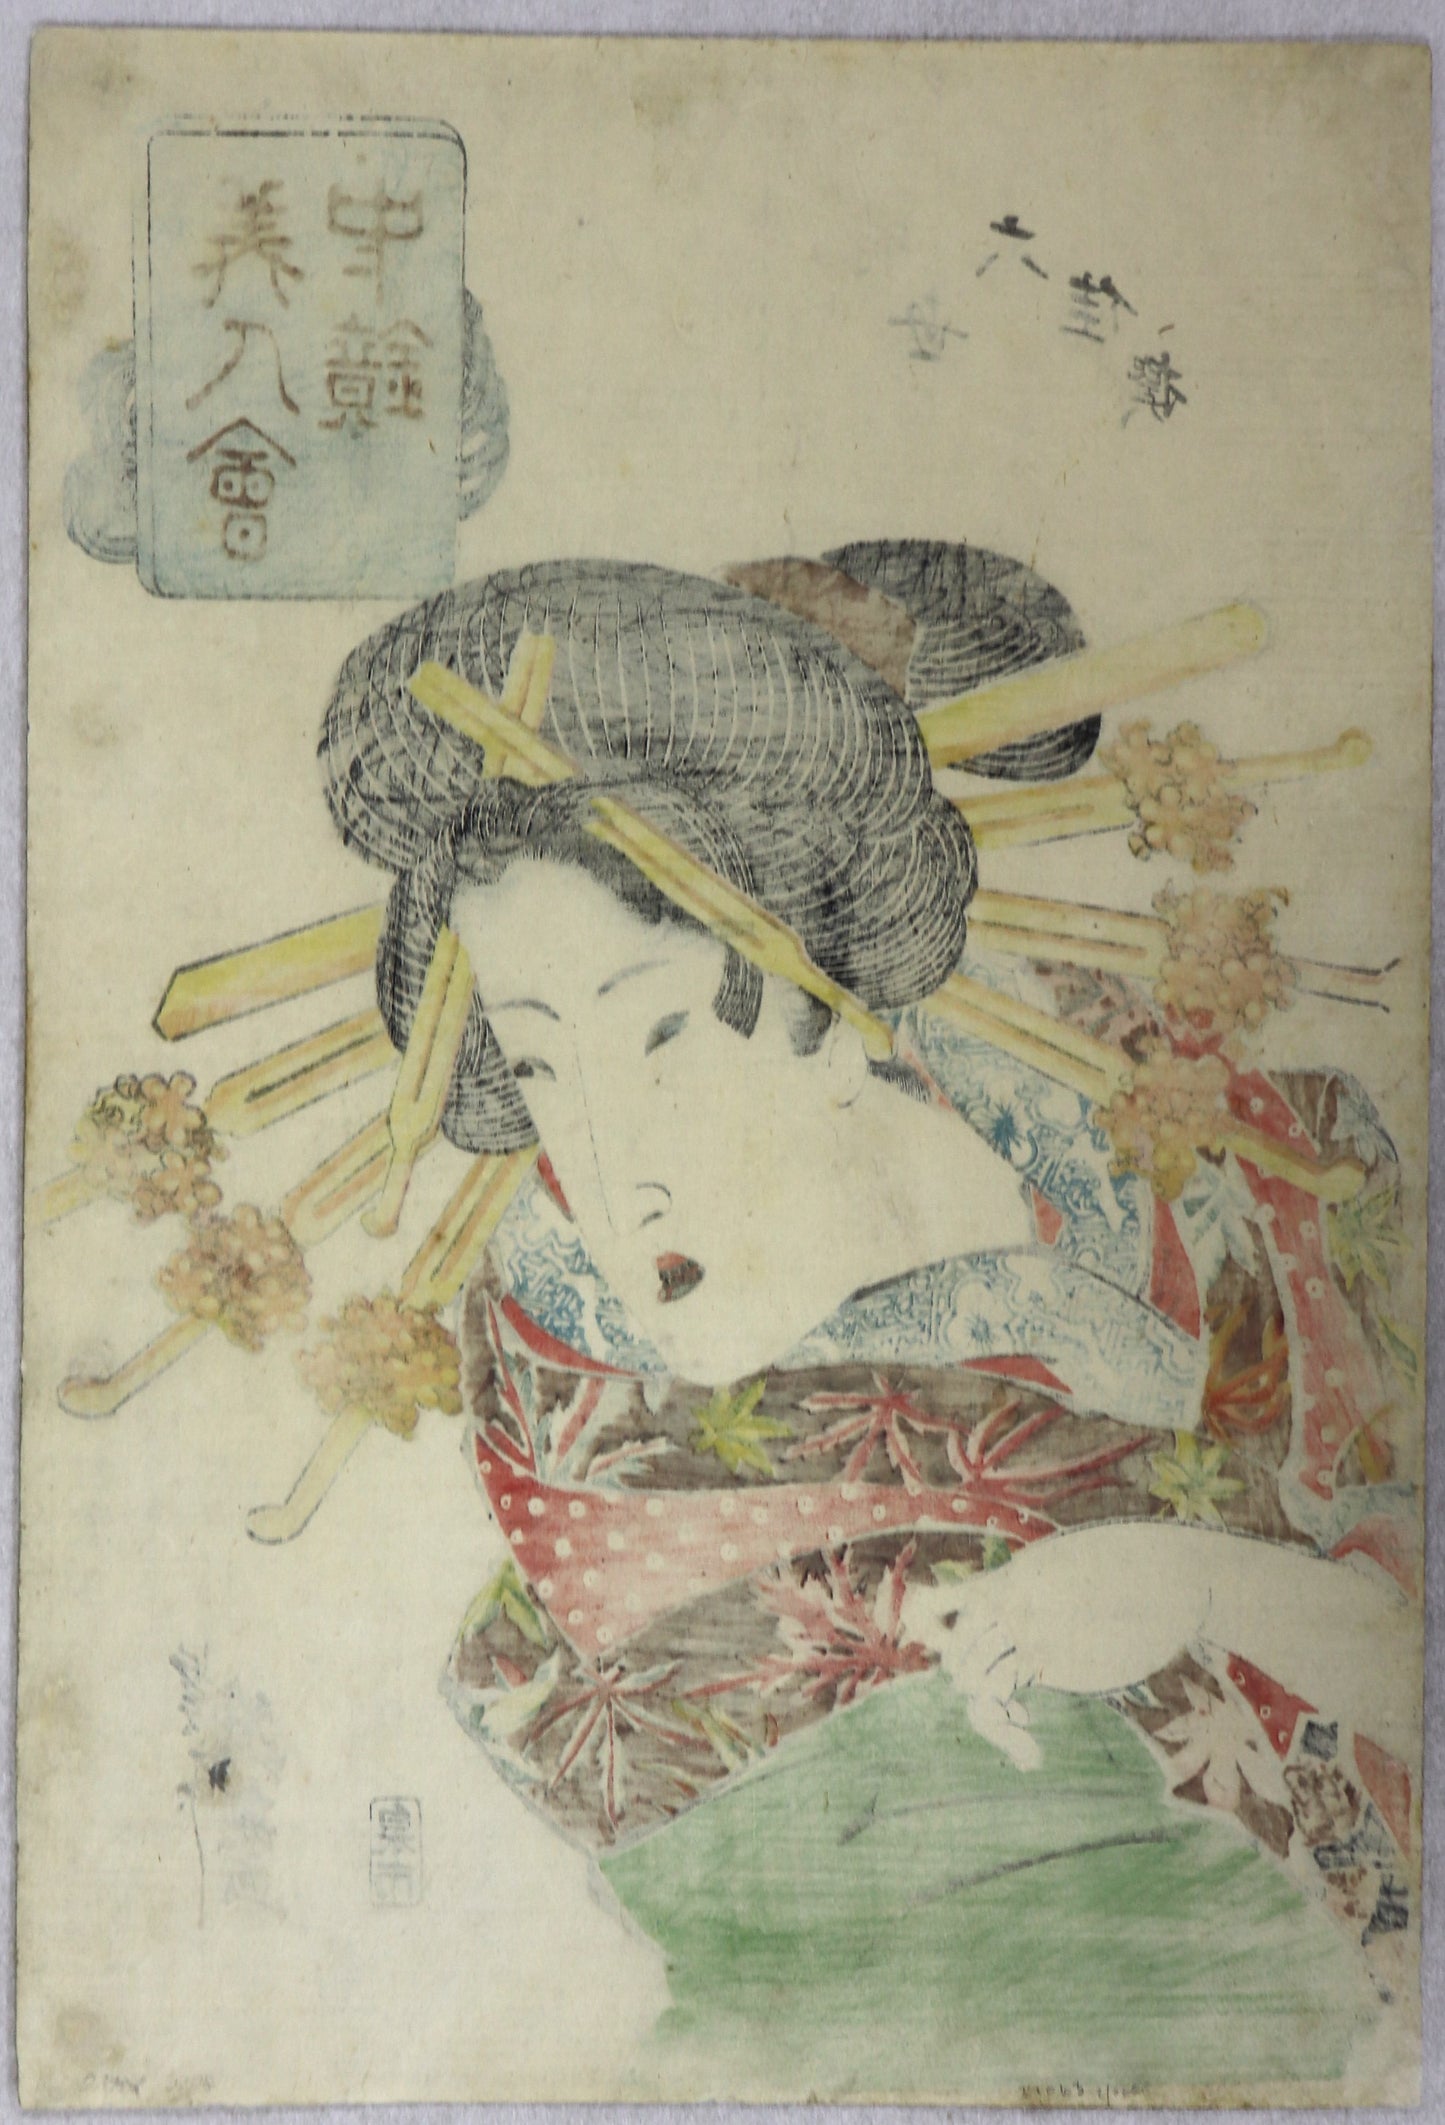 Ariwara no Narihira from the series " a Pocket Mirror of beauties- Six Immortals Poets of the Era " by Eisen / Ariwara no Narihira de la série " Un miroir de poche de beautés- Six Poètes Immortels de l'époque " par Eisen (1826-1828)